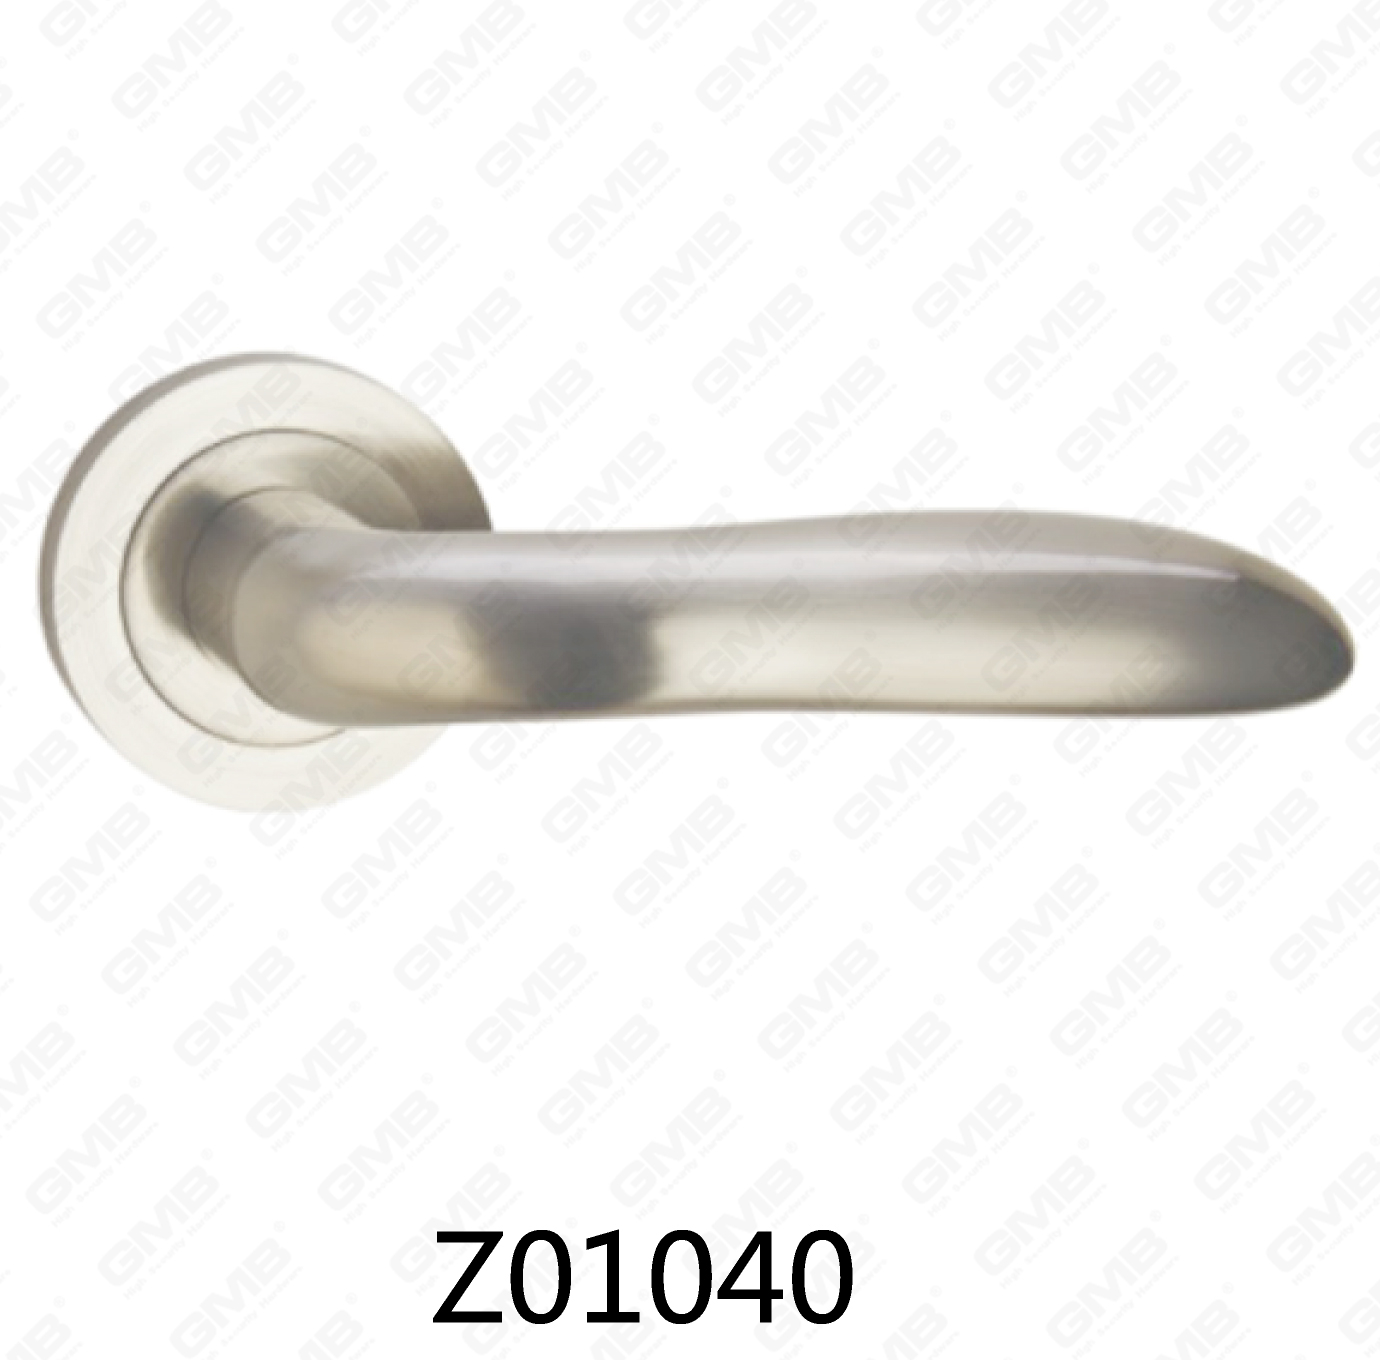 ידית דלת רוזטת אלומיניום מסגסוגת אבץ של Zamak עם רוזטה עגולה (Z01040)